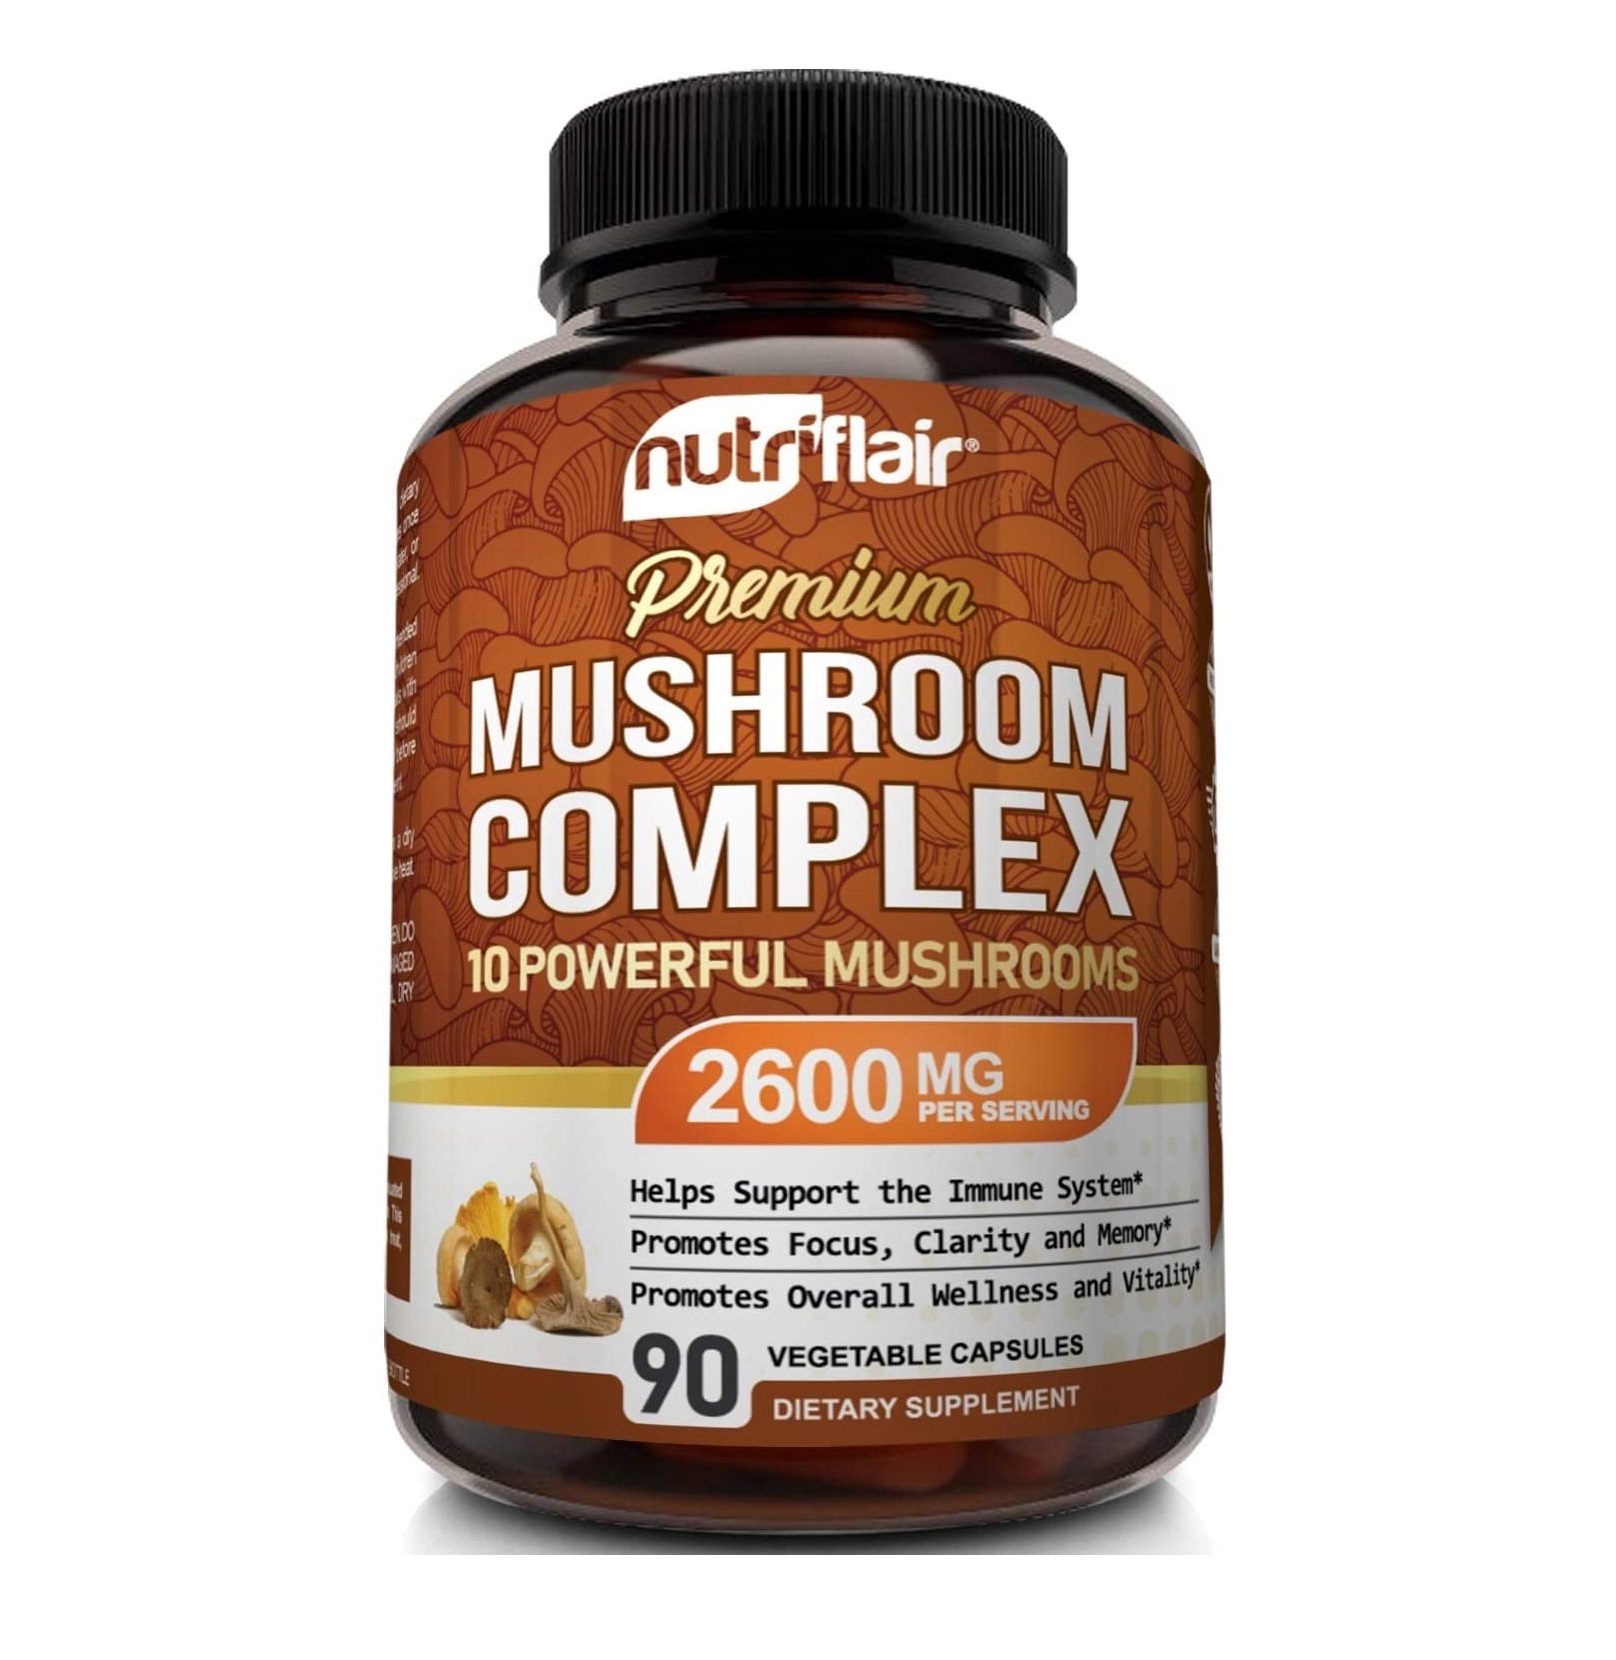 Nutriflair Premium Mushroom Complex 2600mg